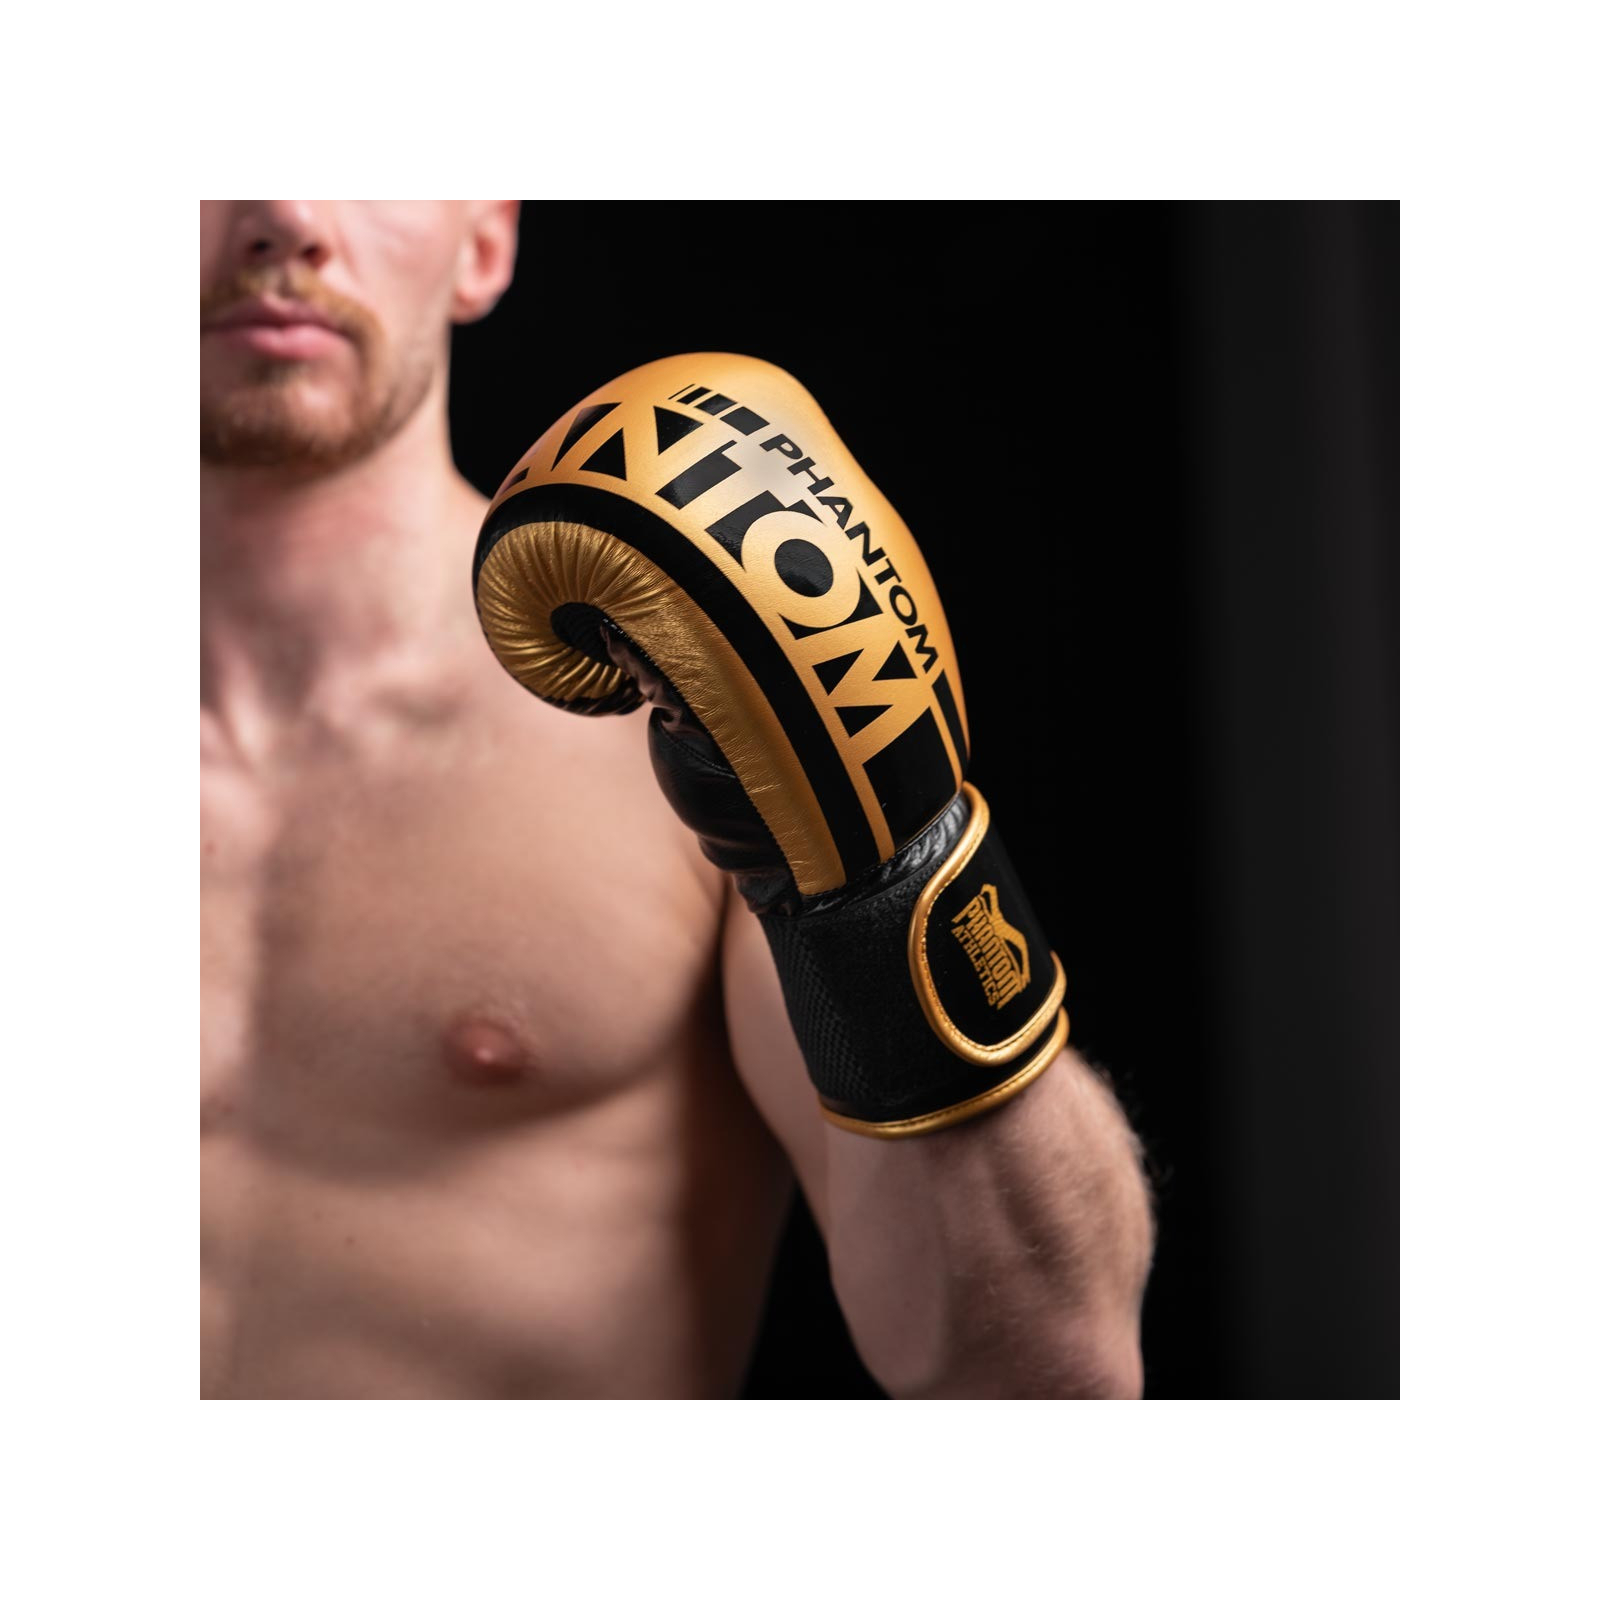 Боксерські рукавички Phantom APEX Elastic Neon Black/Yellow 12oz (PHBG2300-12) зображення 7